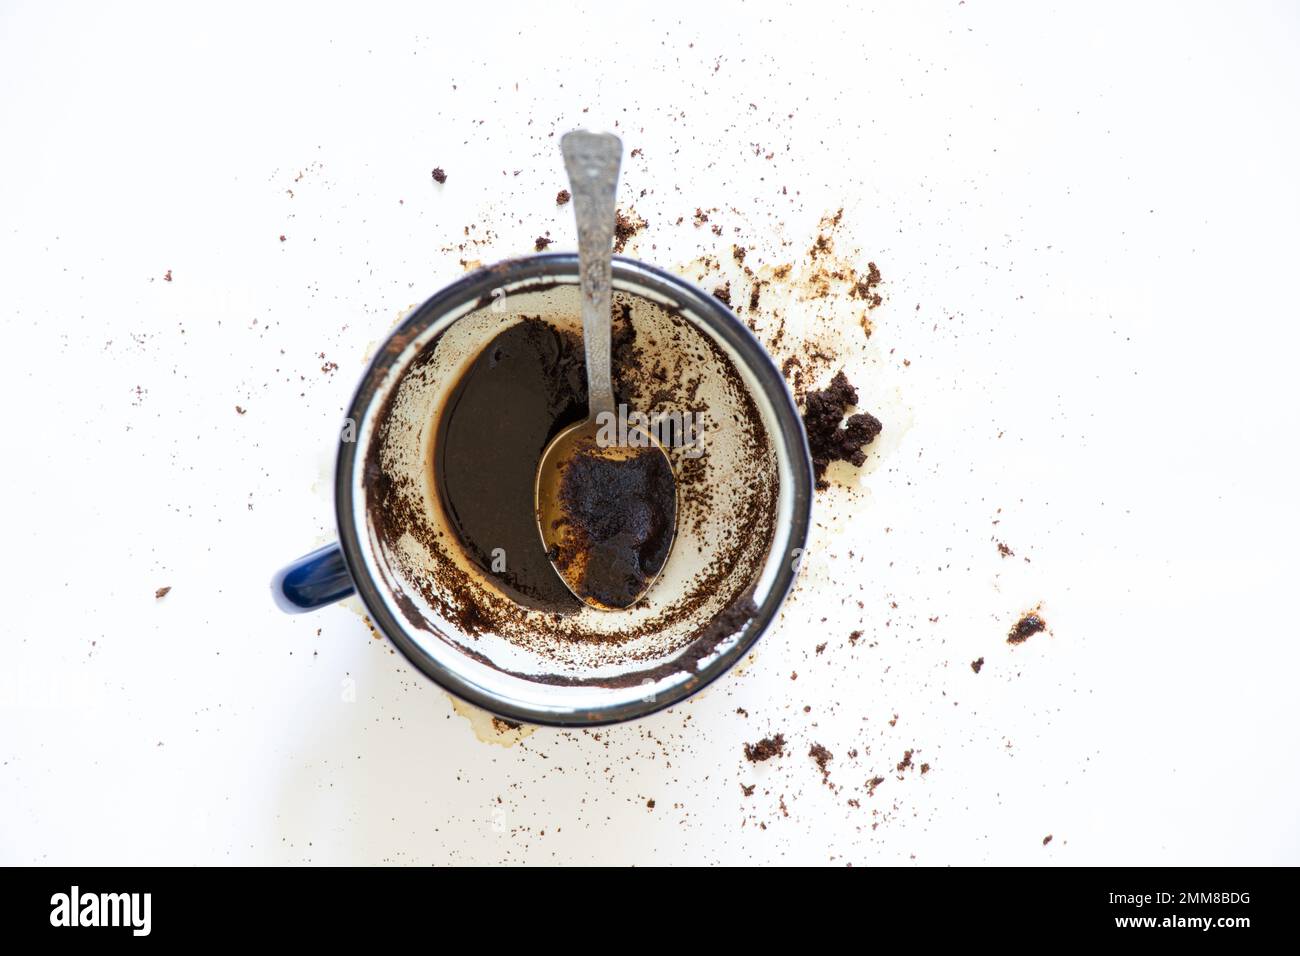 une tasse de café renversé sur un fond blanc et une cuillère à café se trouve à côté, du café renversé sur un fond blanc Banque D'Images